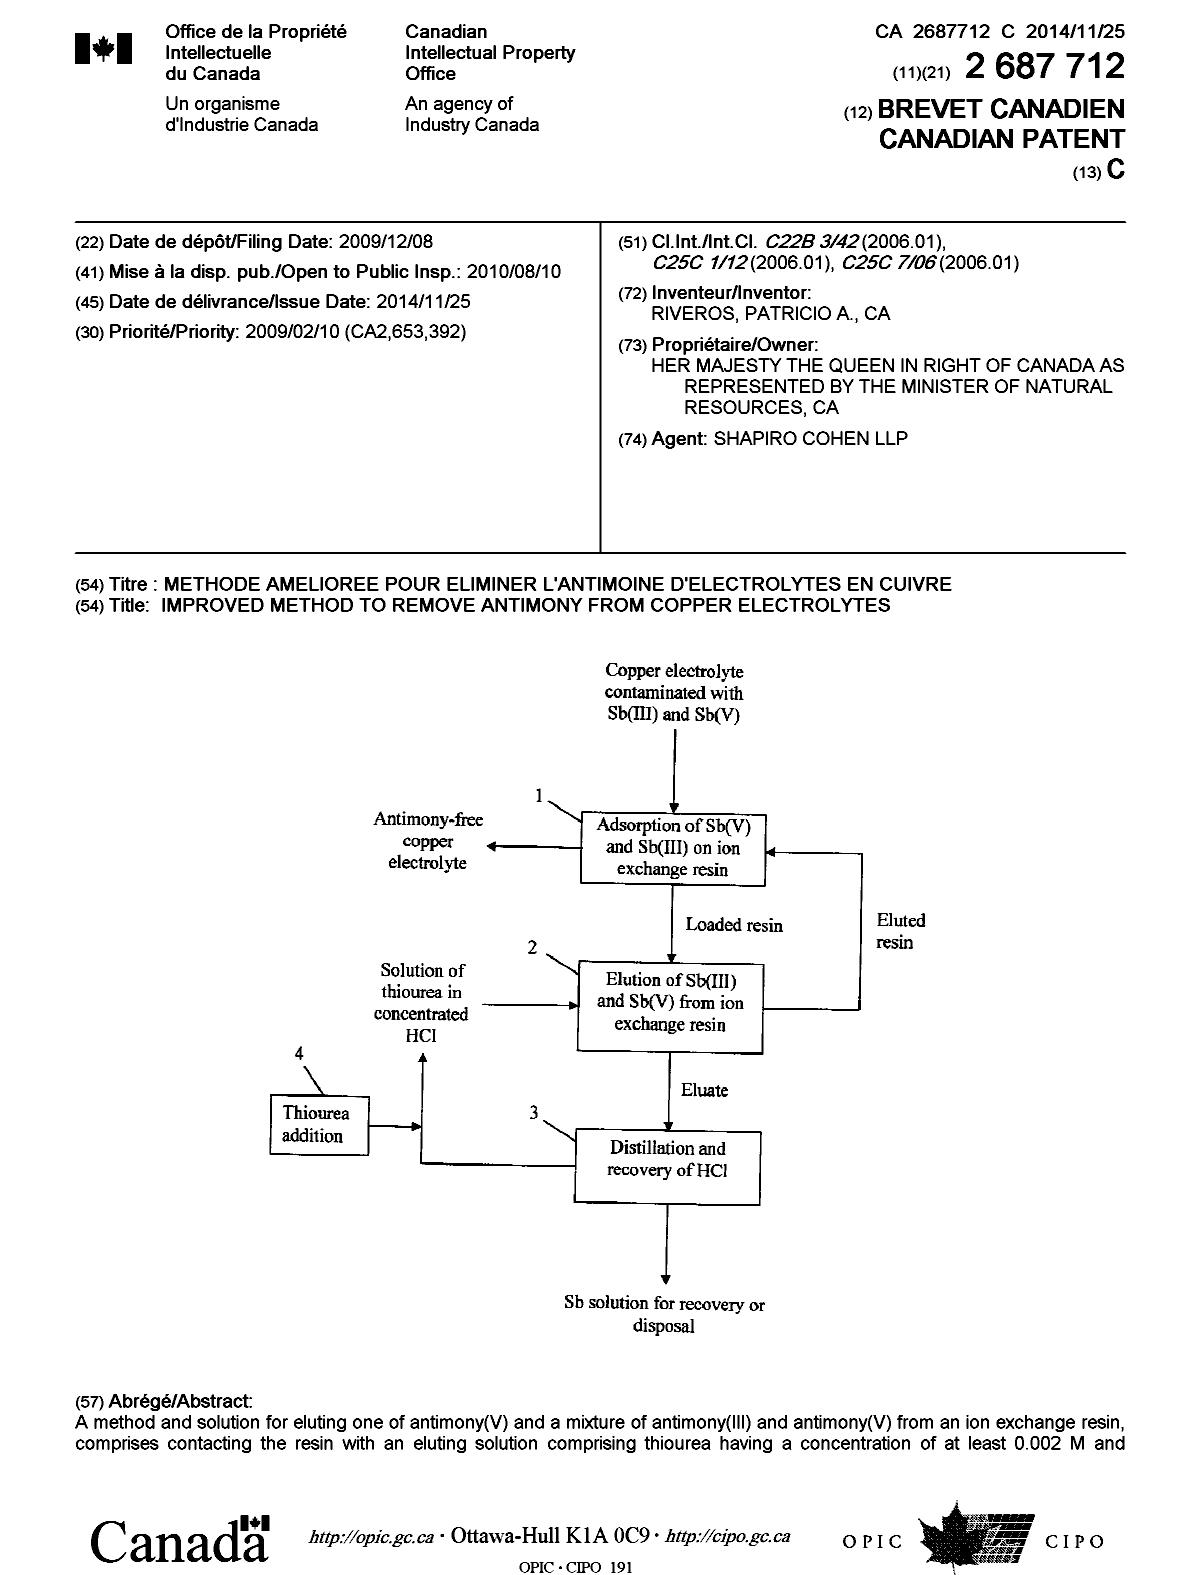 Document de brevet canadien 2687712. Page couverture 20141029. Image 1 de 2